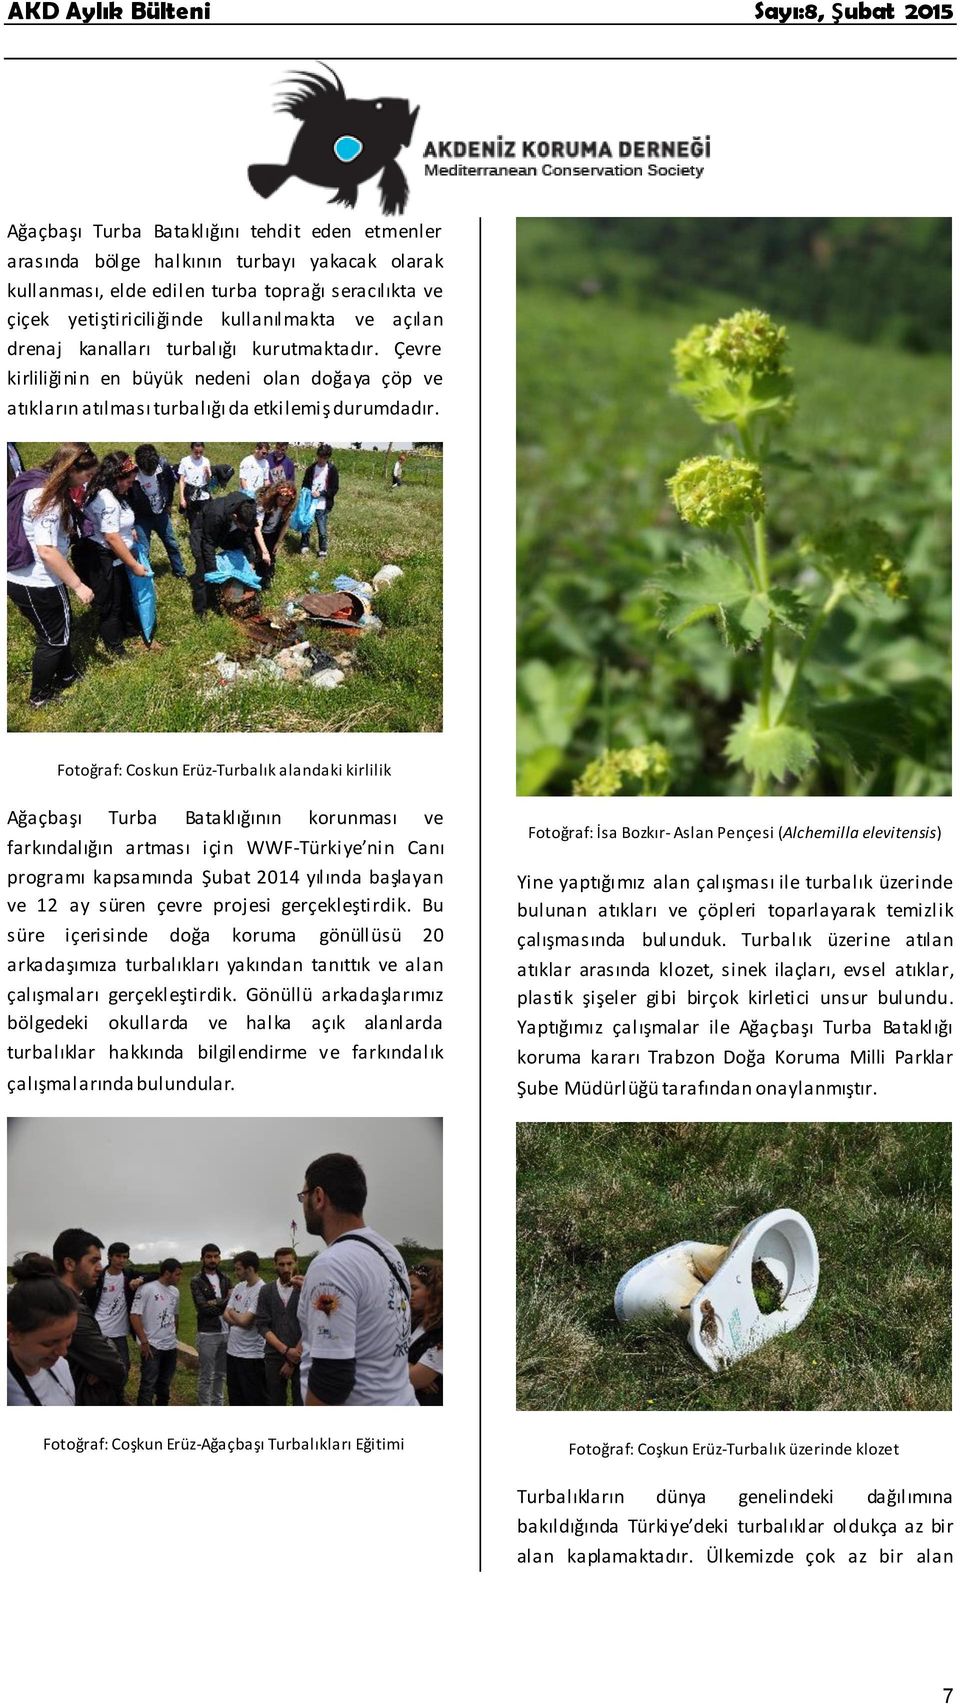 Fotoğraf: Coskun Erüz-Turbalık alandaki kirlilik Ağaçbaşı Turba Bataklığının korunması ve farkındalığın artması için WWF-Türkiye nin Canı programı kapsamında Şubat 2014 yılında başlayan ve 12 ay